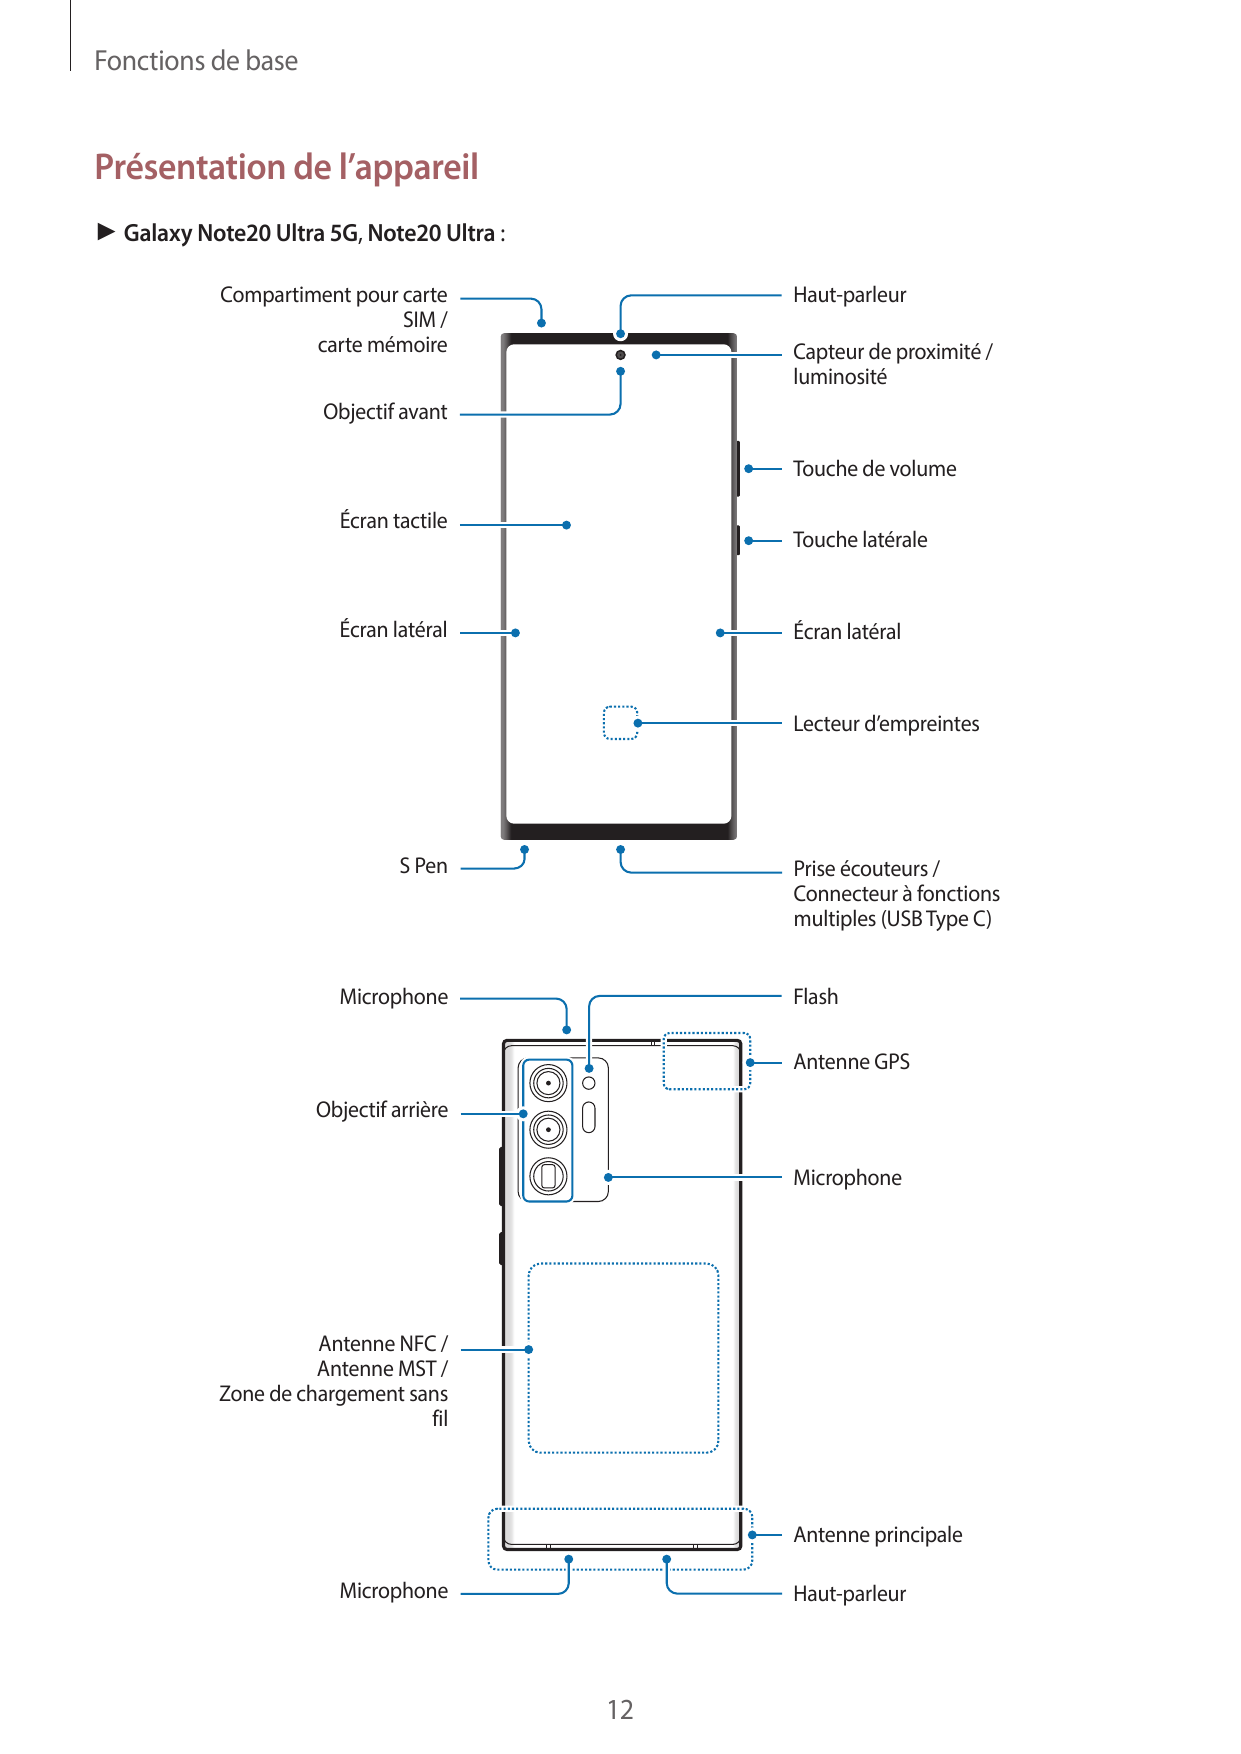 Fonctions de basePrésentation de l’appareil► Galaxy Note20 Ultra 5G, Note20 Ultra :Compartiment pour carteSIM /carte mémoireHaut